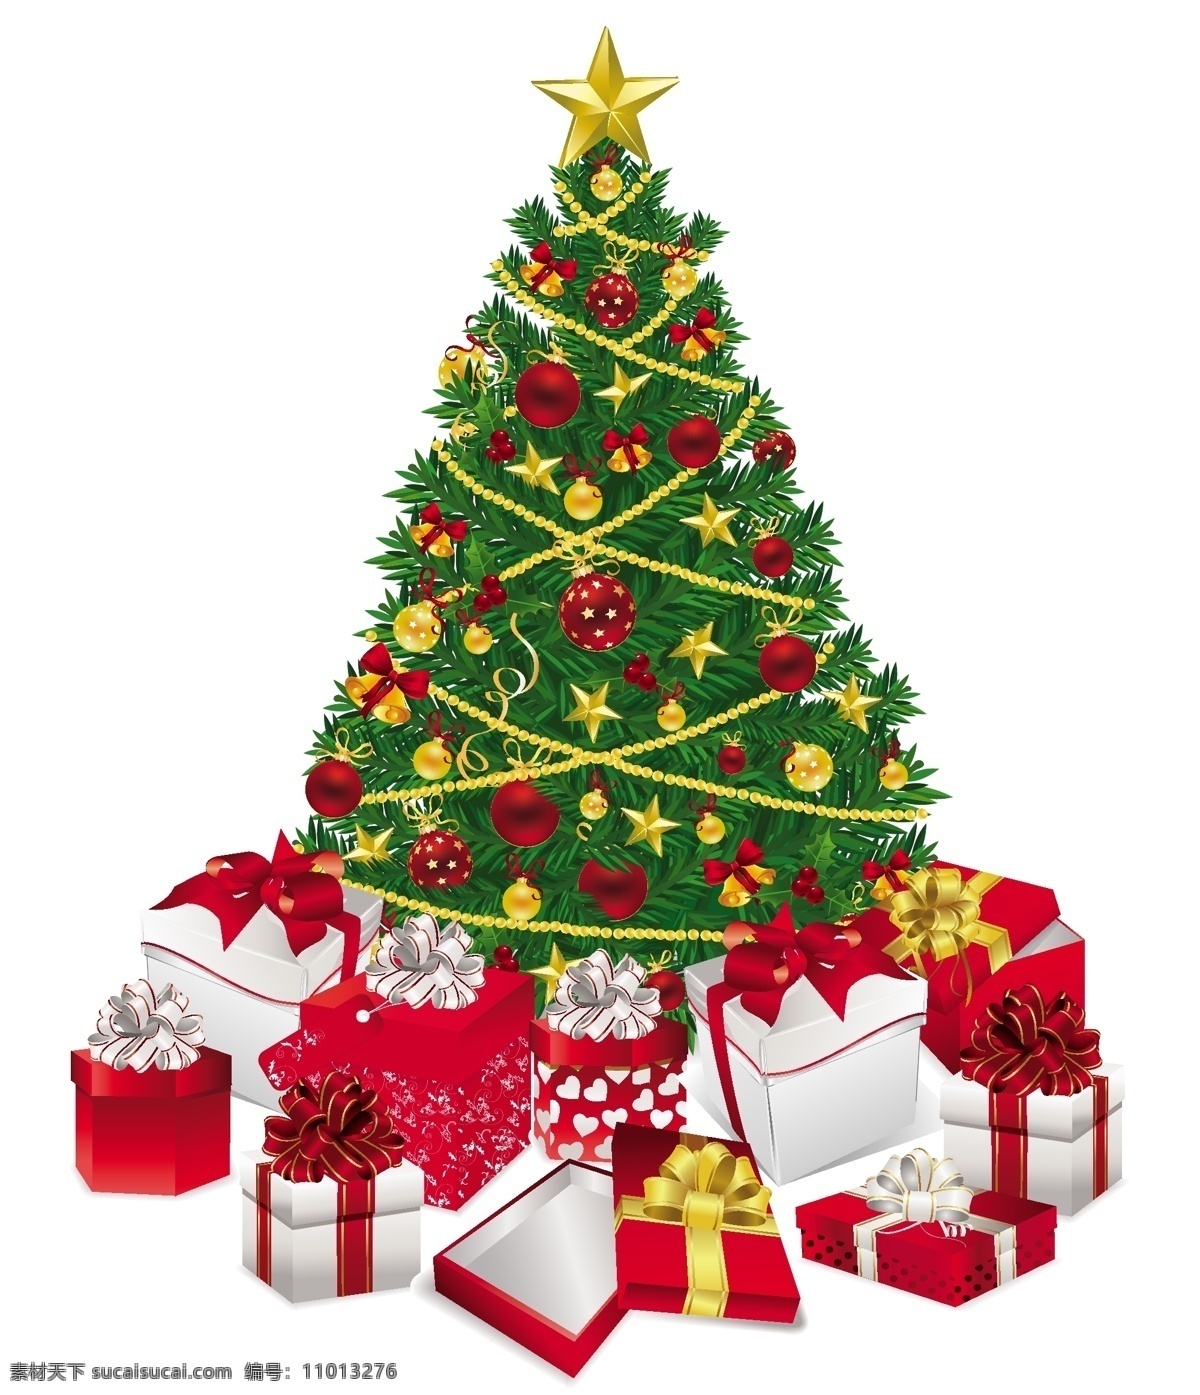 2011 圣诞 礼物 装饰设计 矢量 圣诞节 圣诞老人 圣诞礼物 圣诞树 节日素材 其他节日